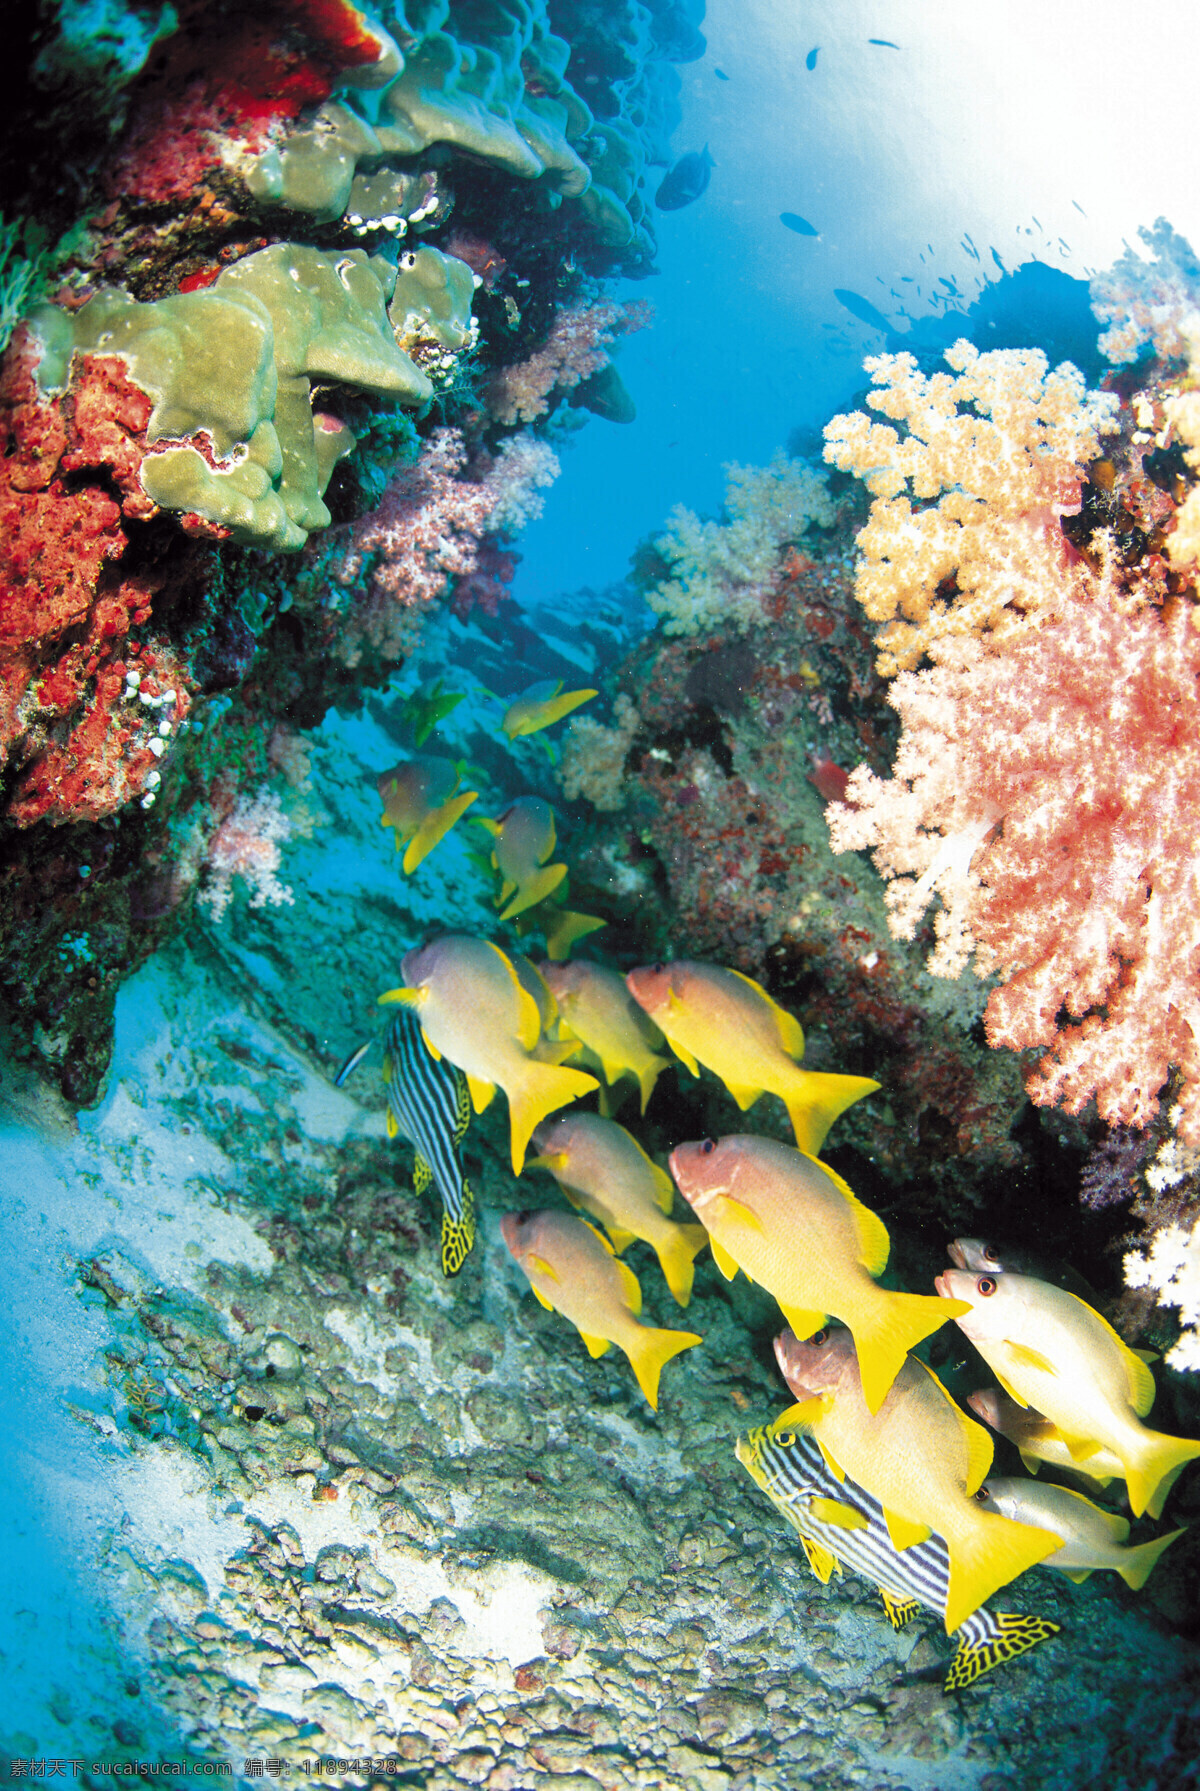 梦幻海洋 海洋鱼 海底鱼 黄色鱼特写 海洋鱼类 热带鱼 观赏鱼特写 珊瑚礁 珊瑚藻 海洋藻类 观赏藻 海底微生物 微生物特写 海底植物 深海植被 水族馆 海底世界 深海海水 海洋生物 生物世界